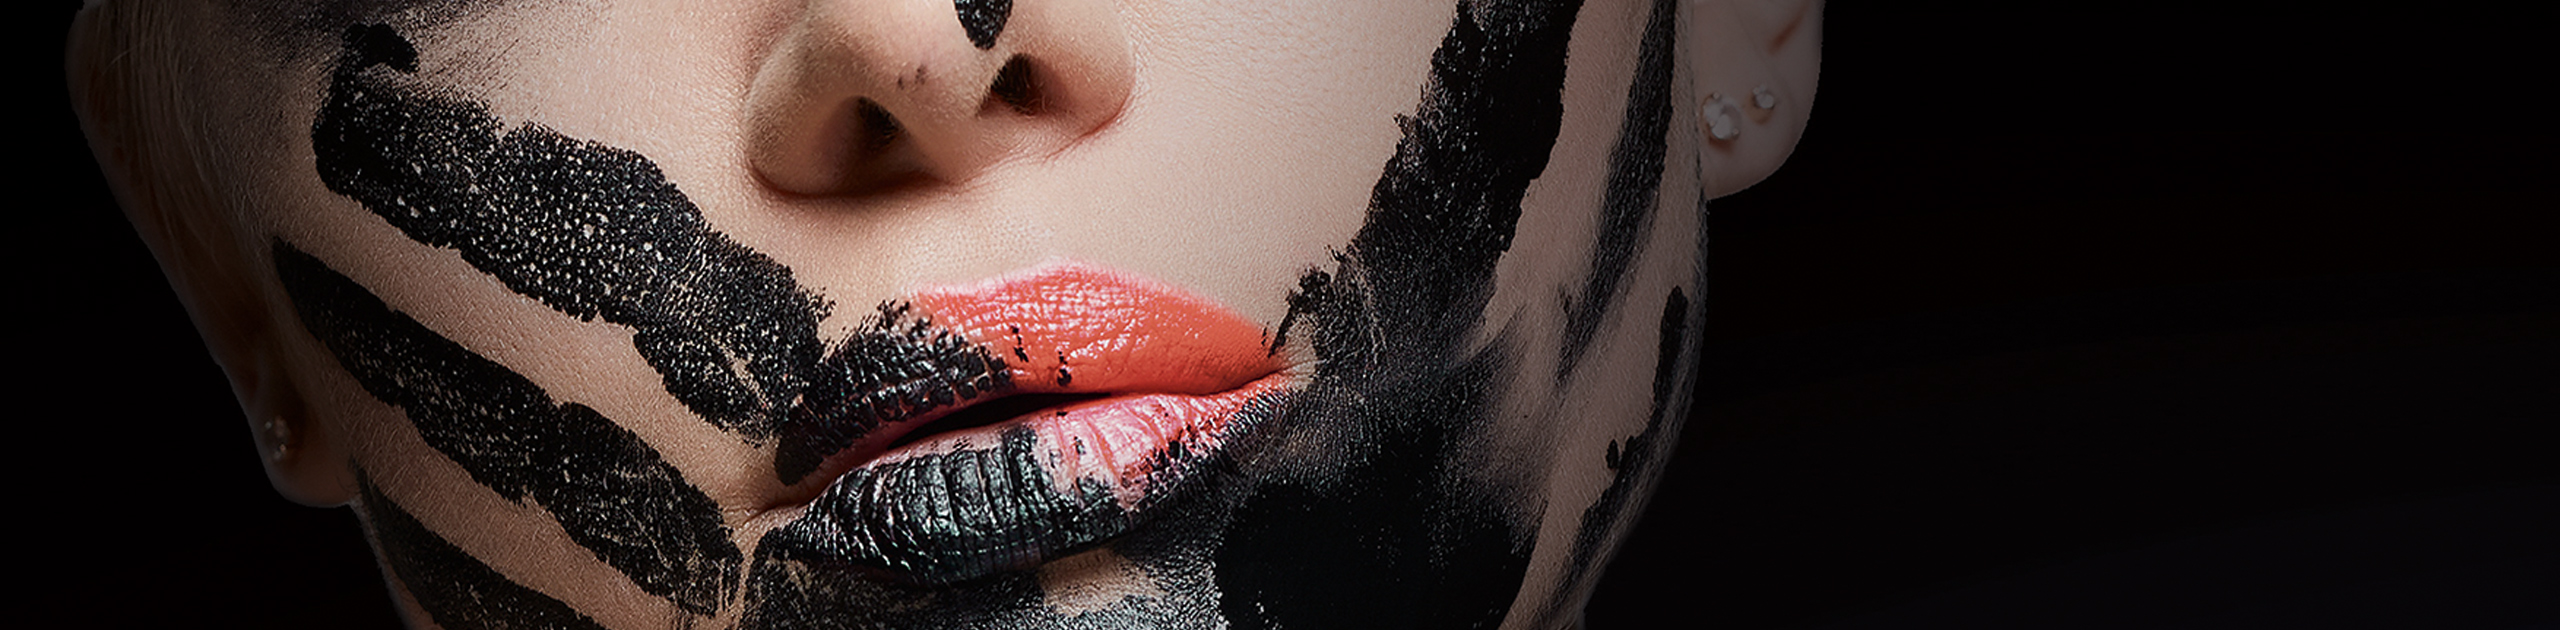 Frauengesicht bis zur Nase teilweise schwarz geschminkt, Foto: Werbeagentur Hueper